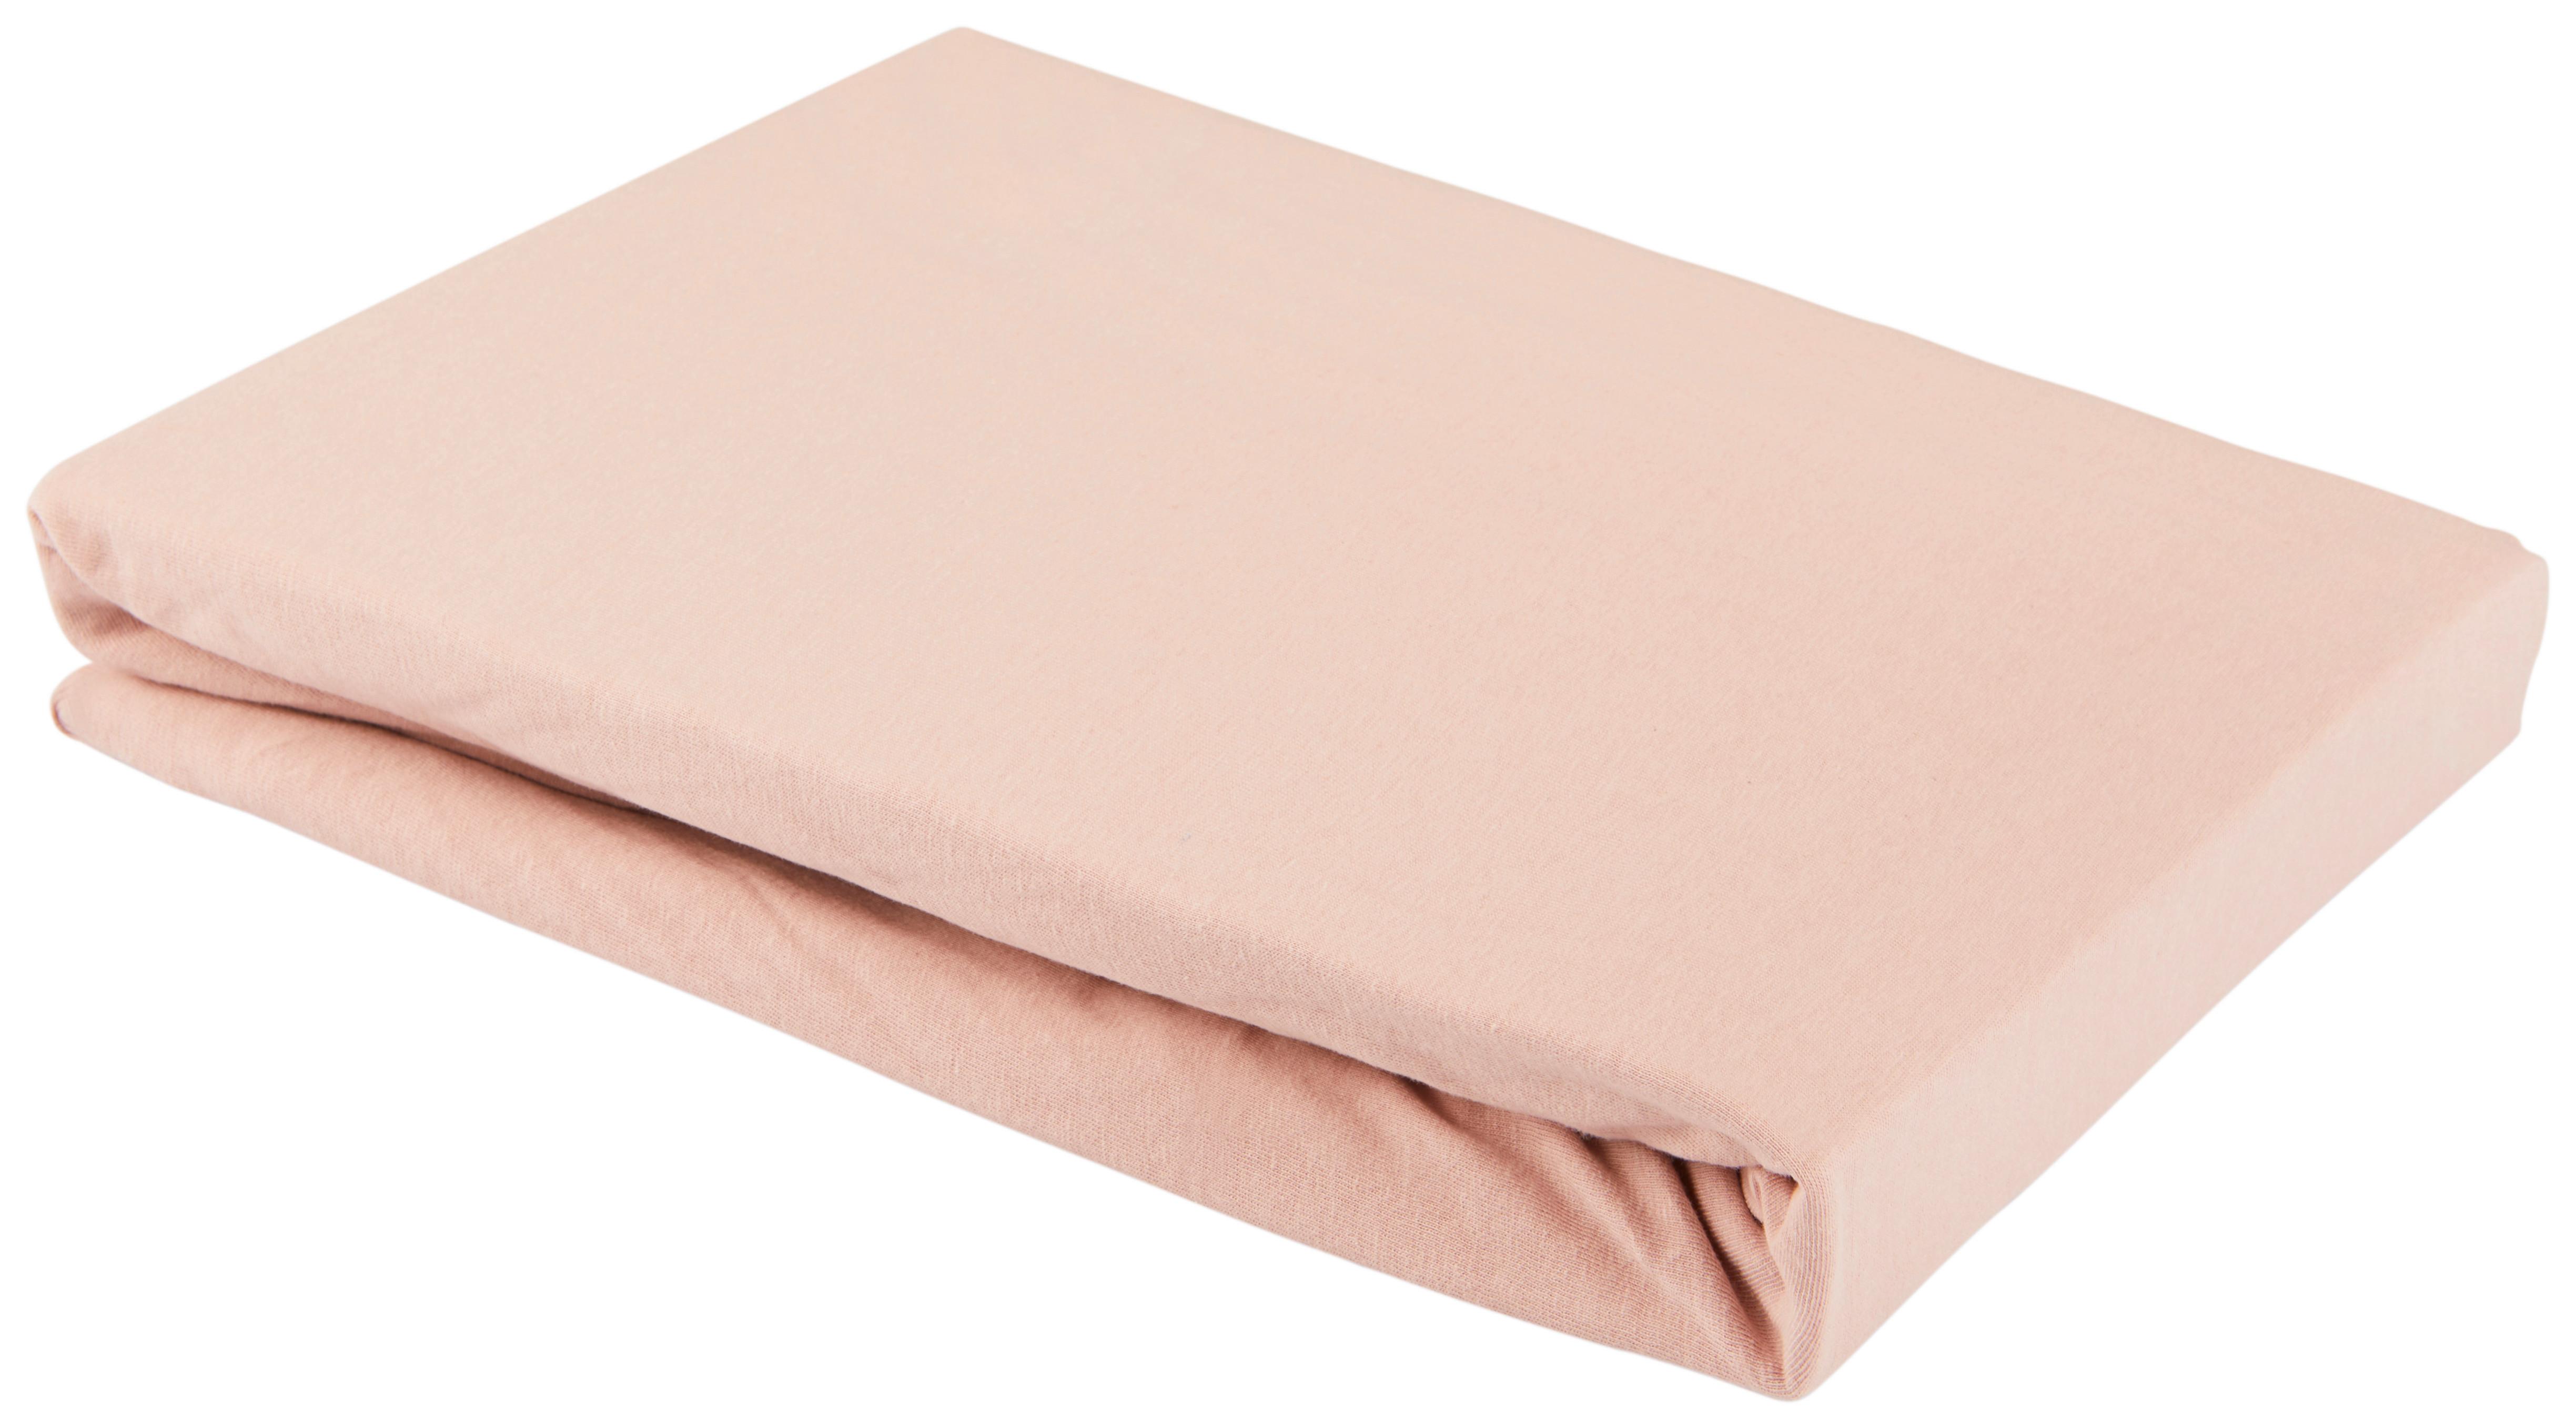 Elastické Prostěradlo Basic, 150/200cm, Růžová - růžová, textil (150/200cm) - Modern Living